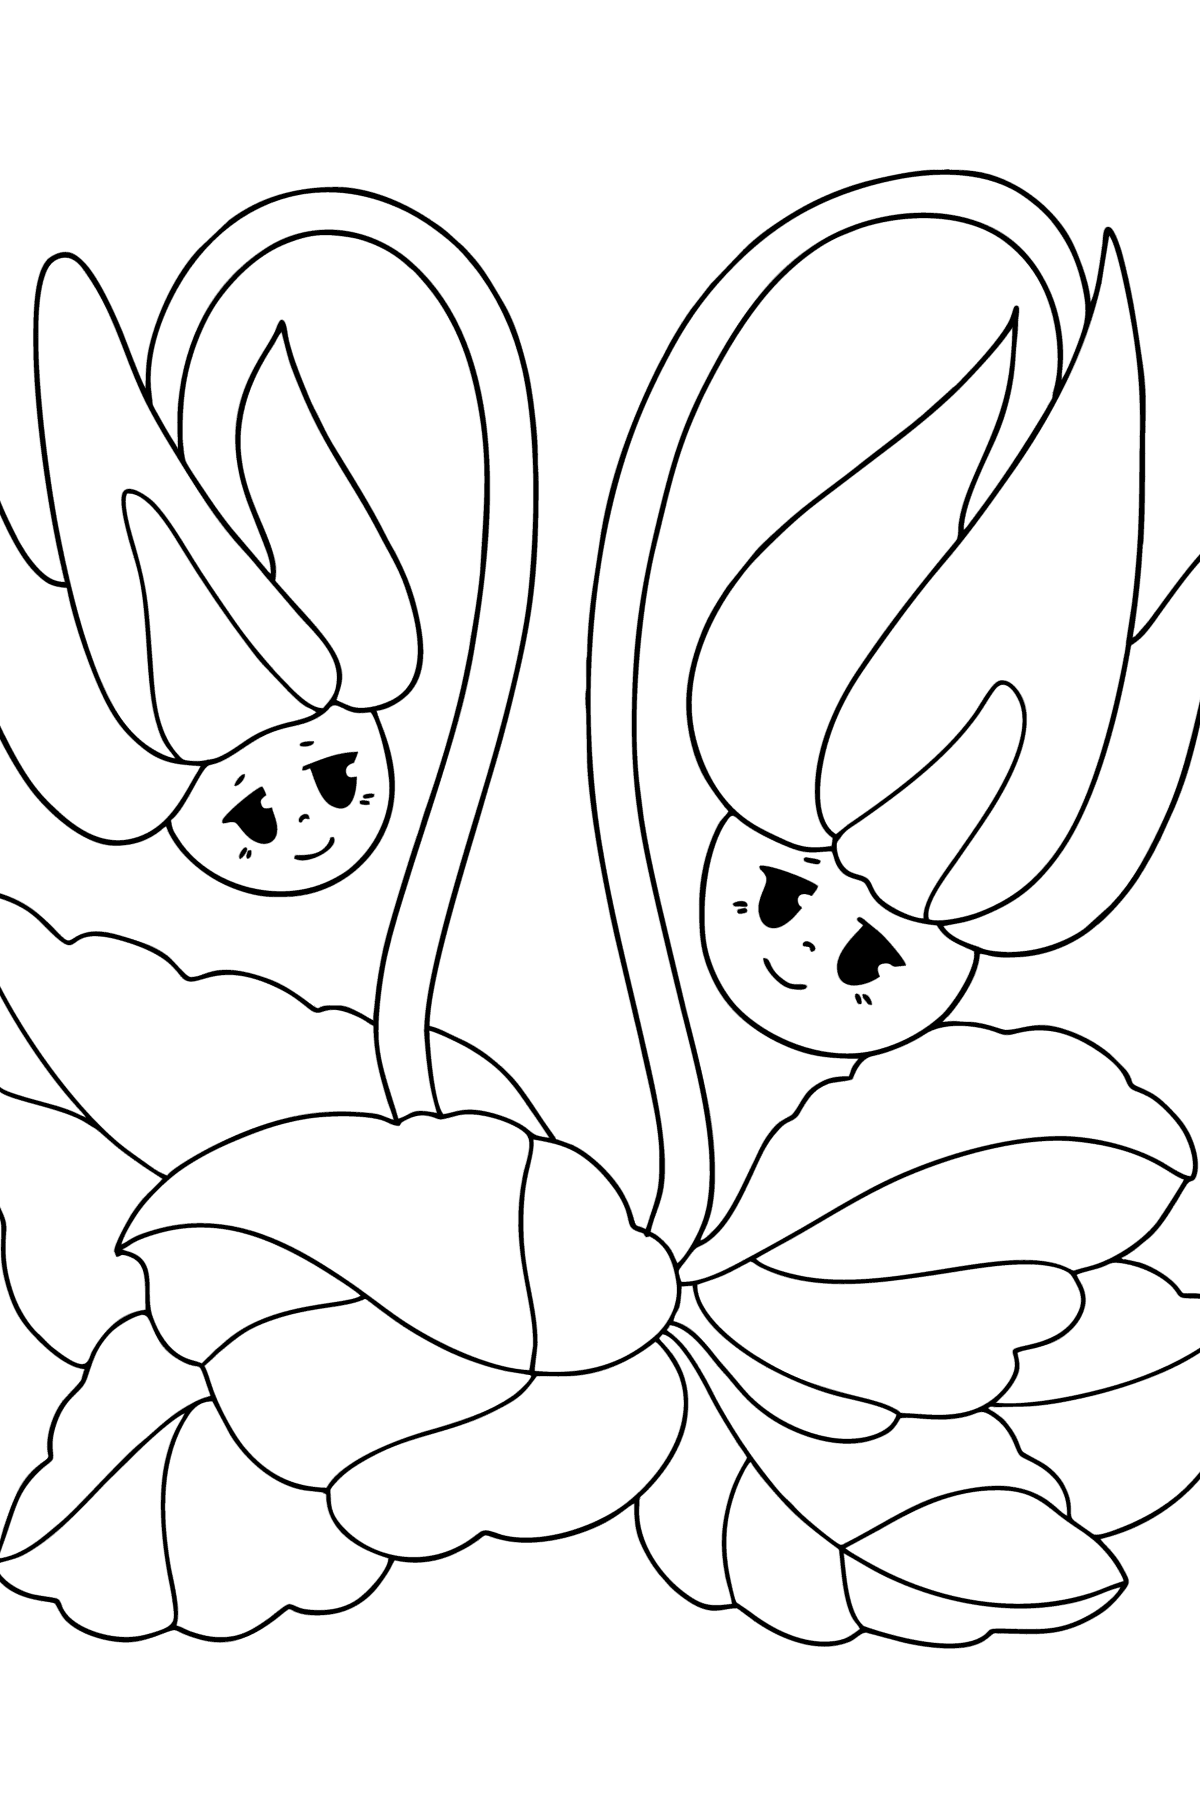 Tegning til fargelegging Cyclamen, blomster med øyne - Tegninger til fargelegging for barn